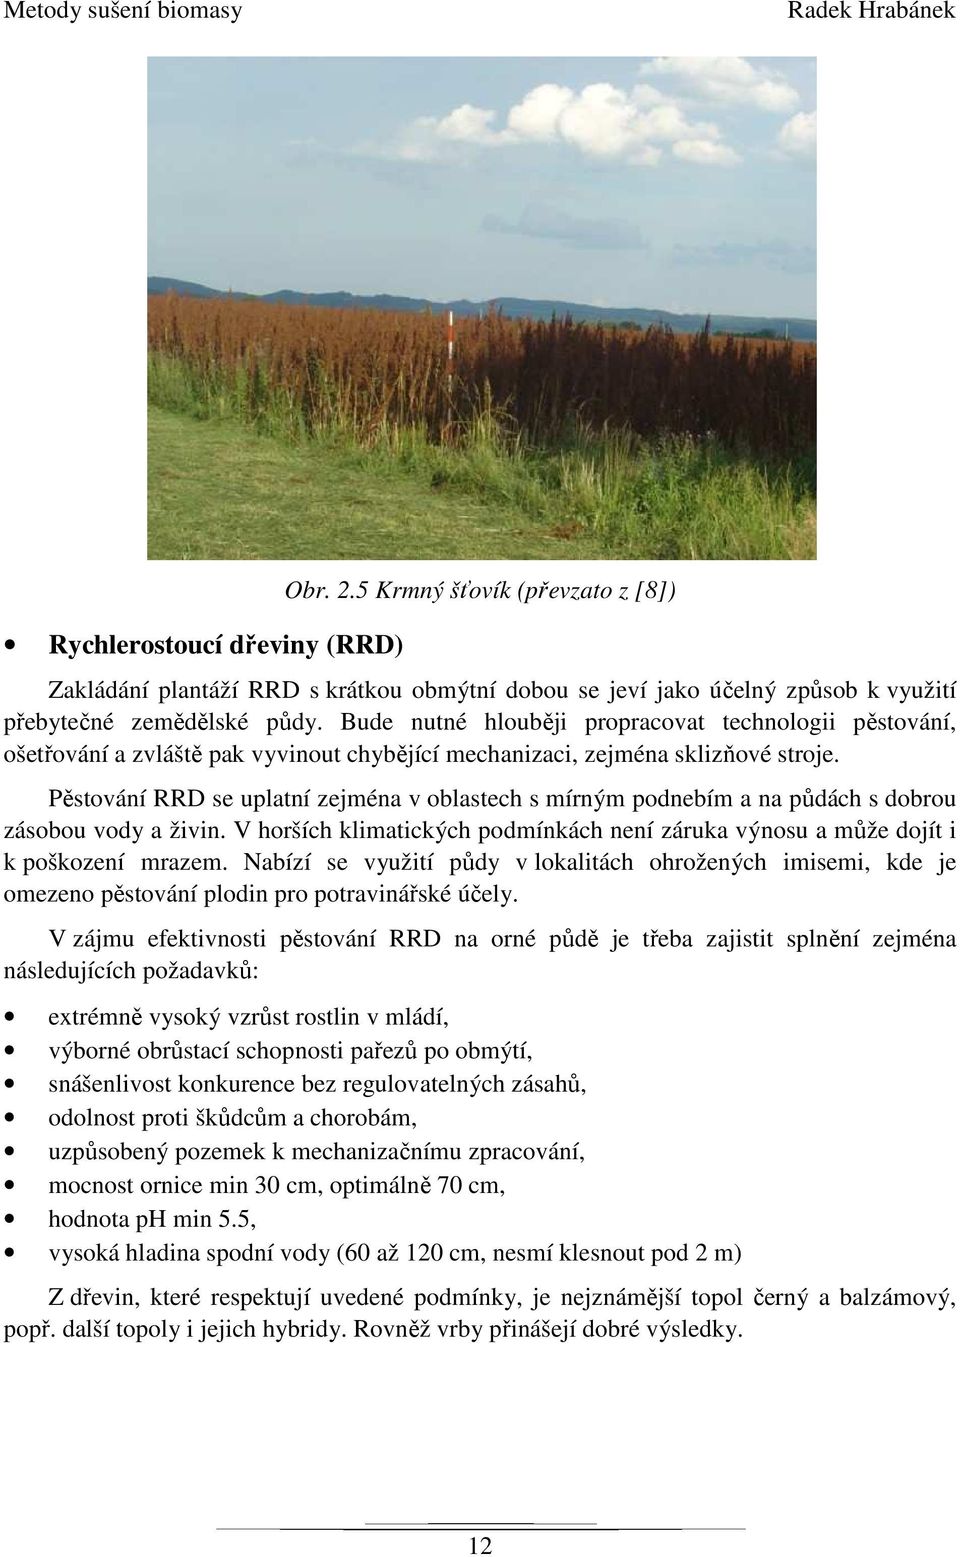 Pěstování RRD se uplatní zejména v oblastech s mírným podnebím a na půdách s dobrou zásobou vody a živin. V horších klimatických podmínkách není záruka výnosu a může dojít i k poškození mrazem.